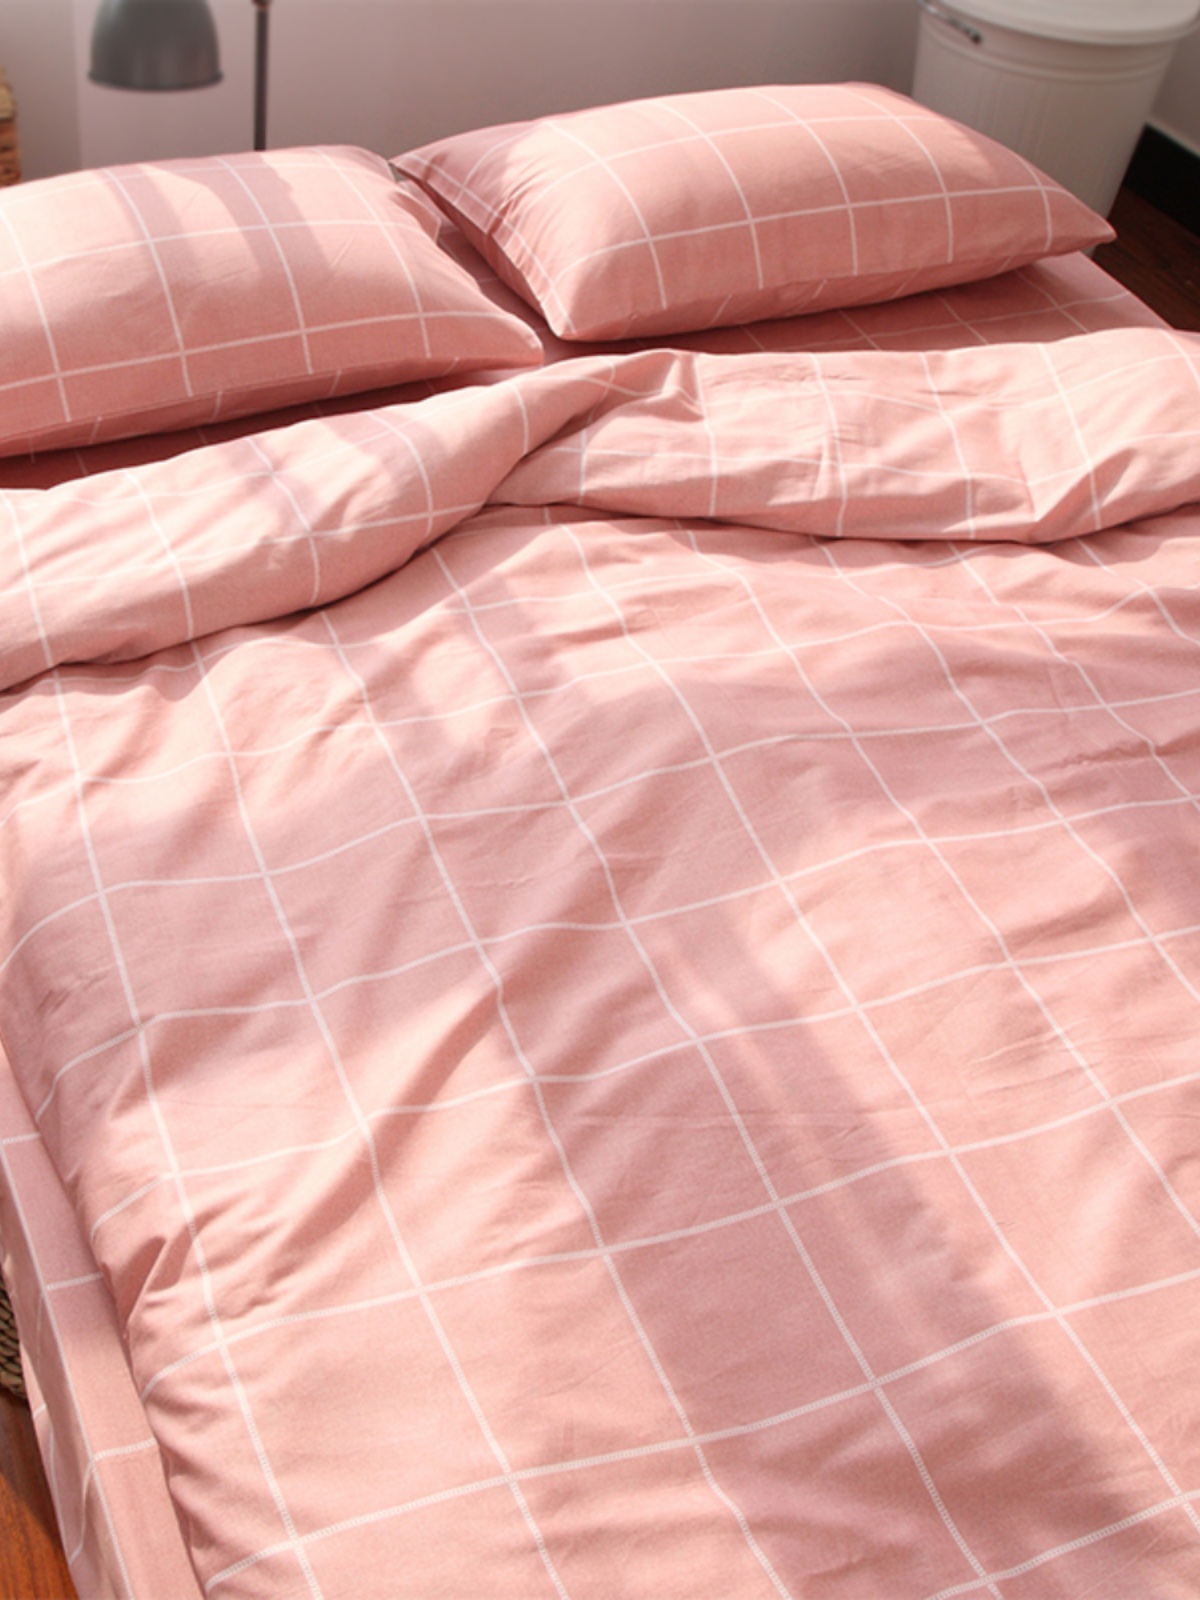 日系簡約格子床單四件套全棉純棉材質保暖舒適適用於多種床型尺寸